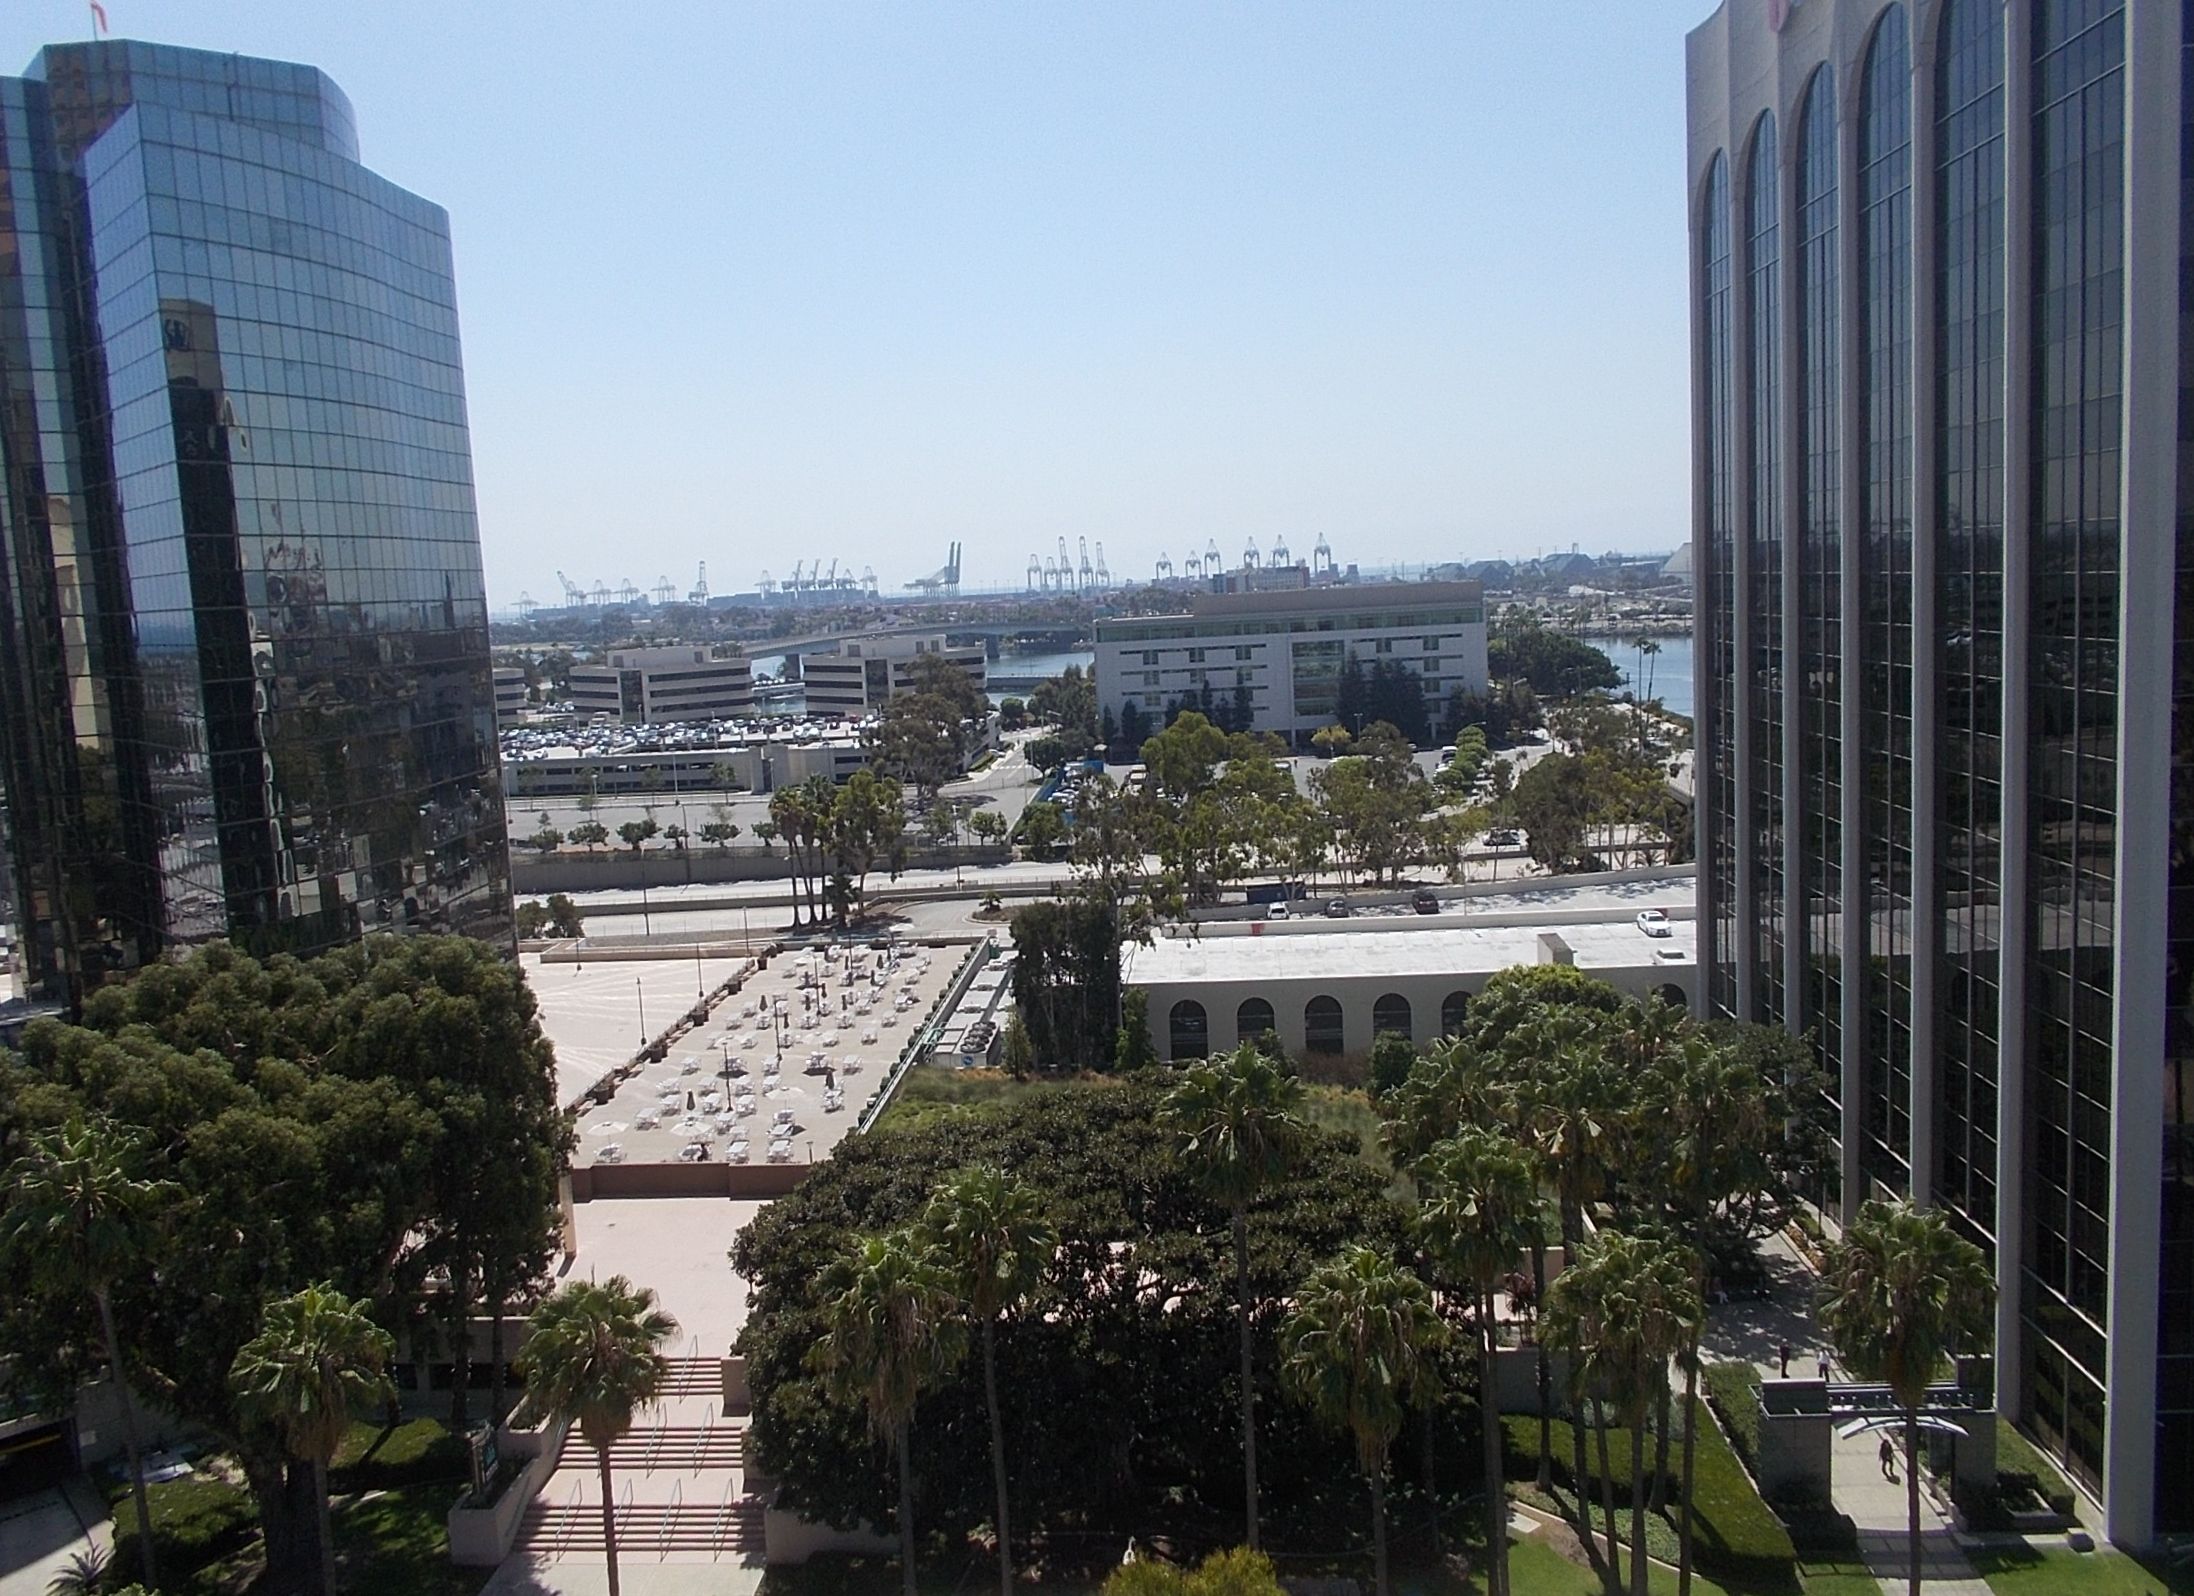 ヒルトン ロングビーチホテル 1119号室からの景色 ラスベガス ロサンゼルスの旅 楽天ブログ